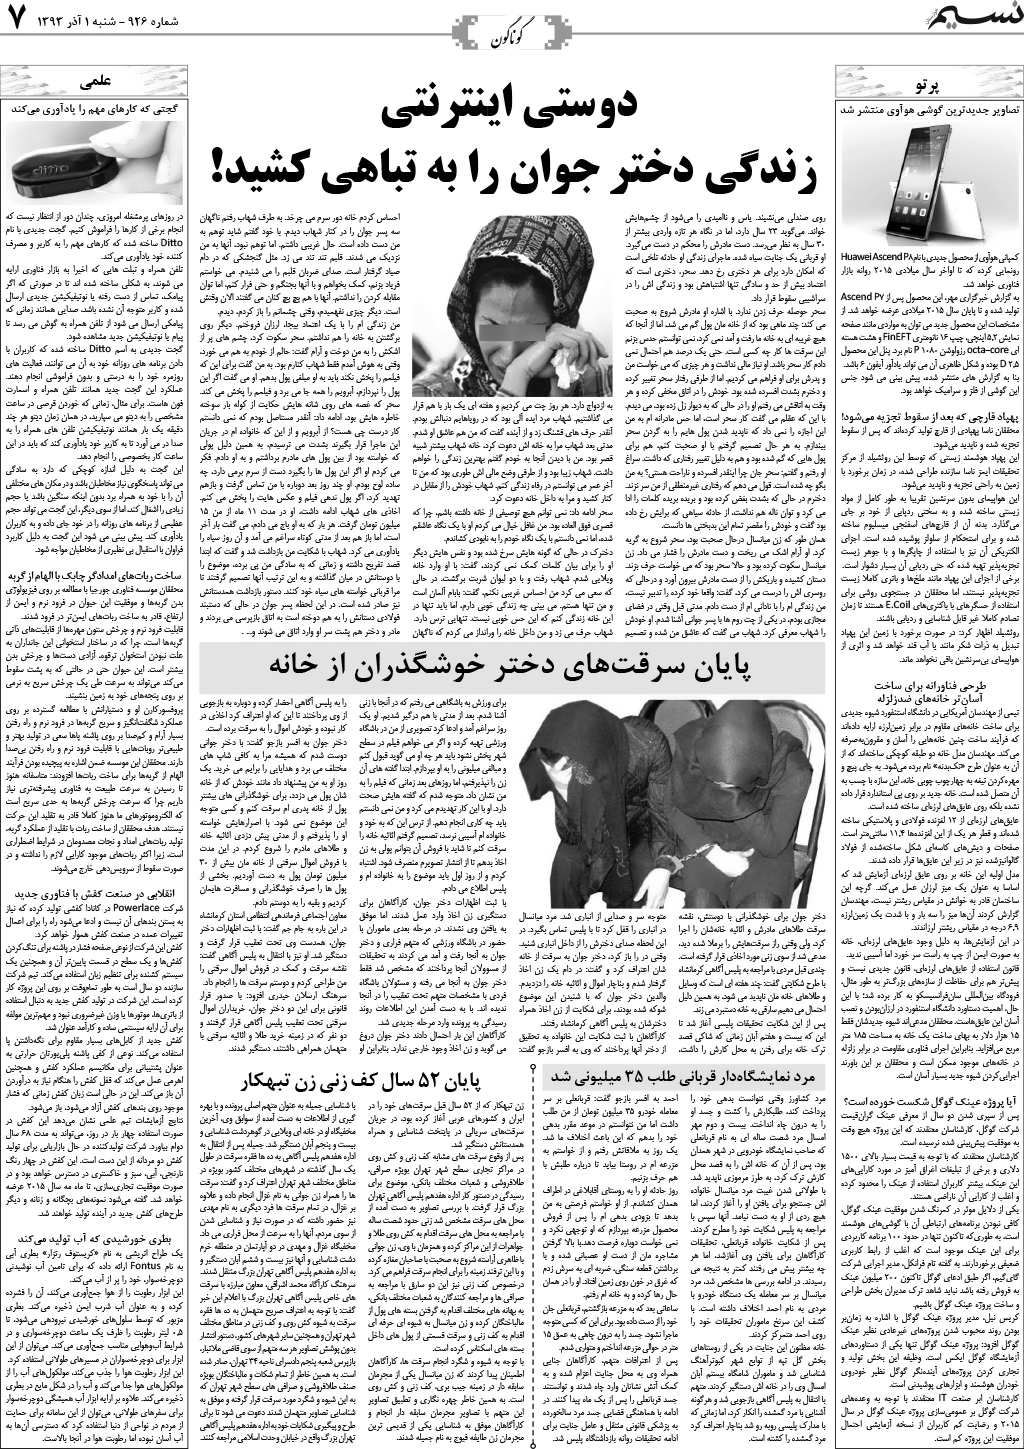 صفحه گوناگون روزنامه نسیم شماره 926